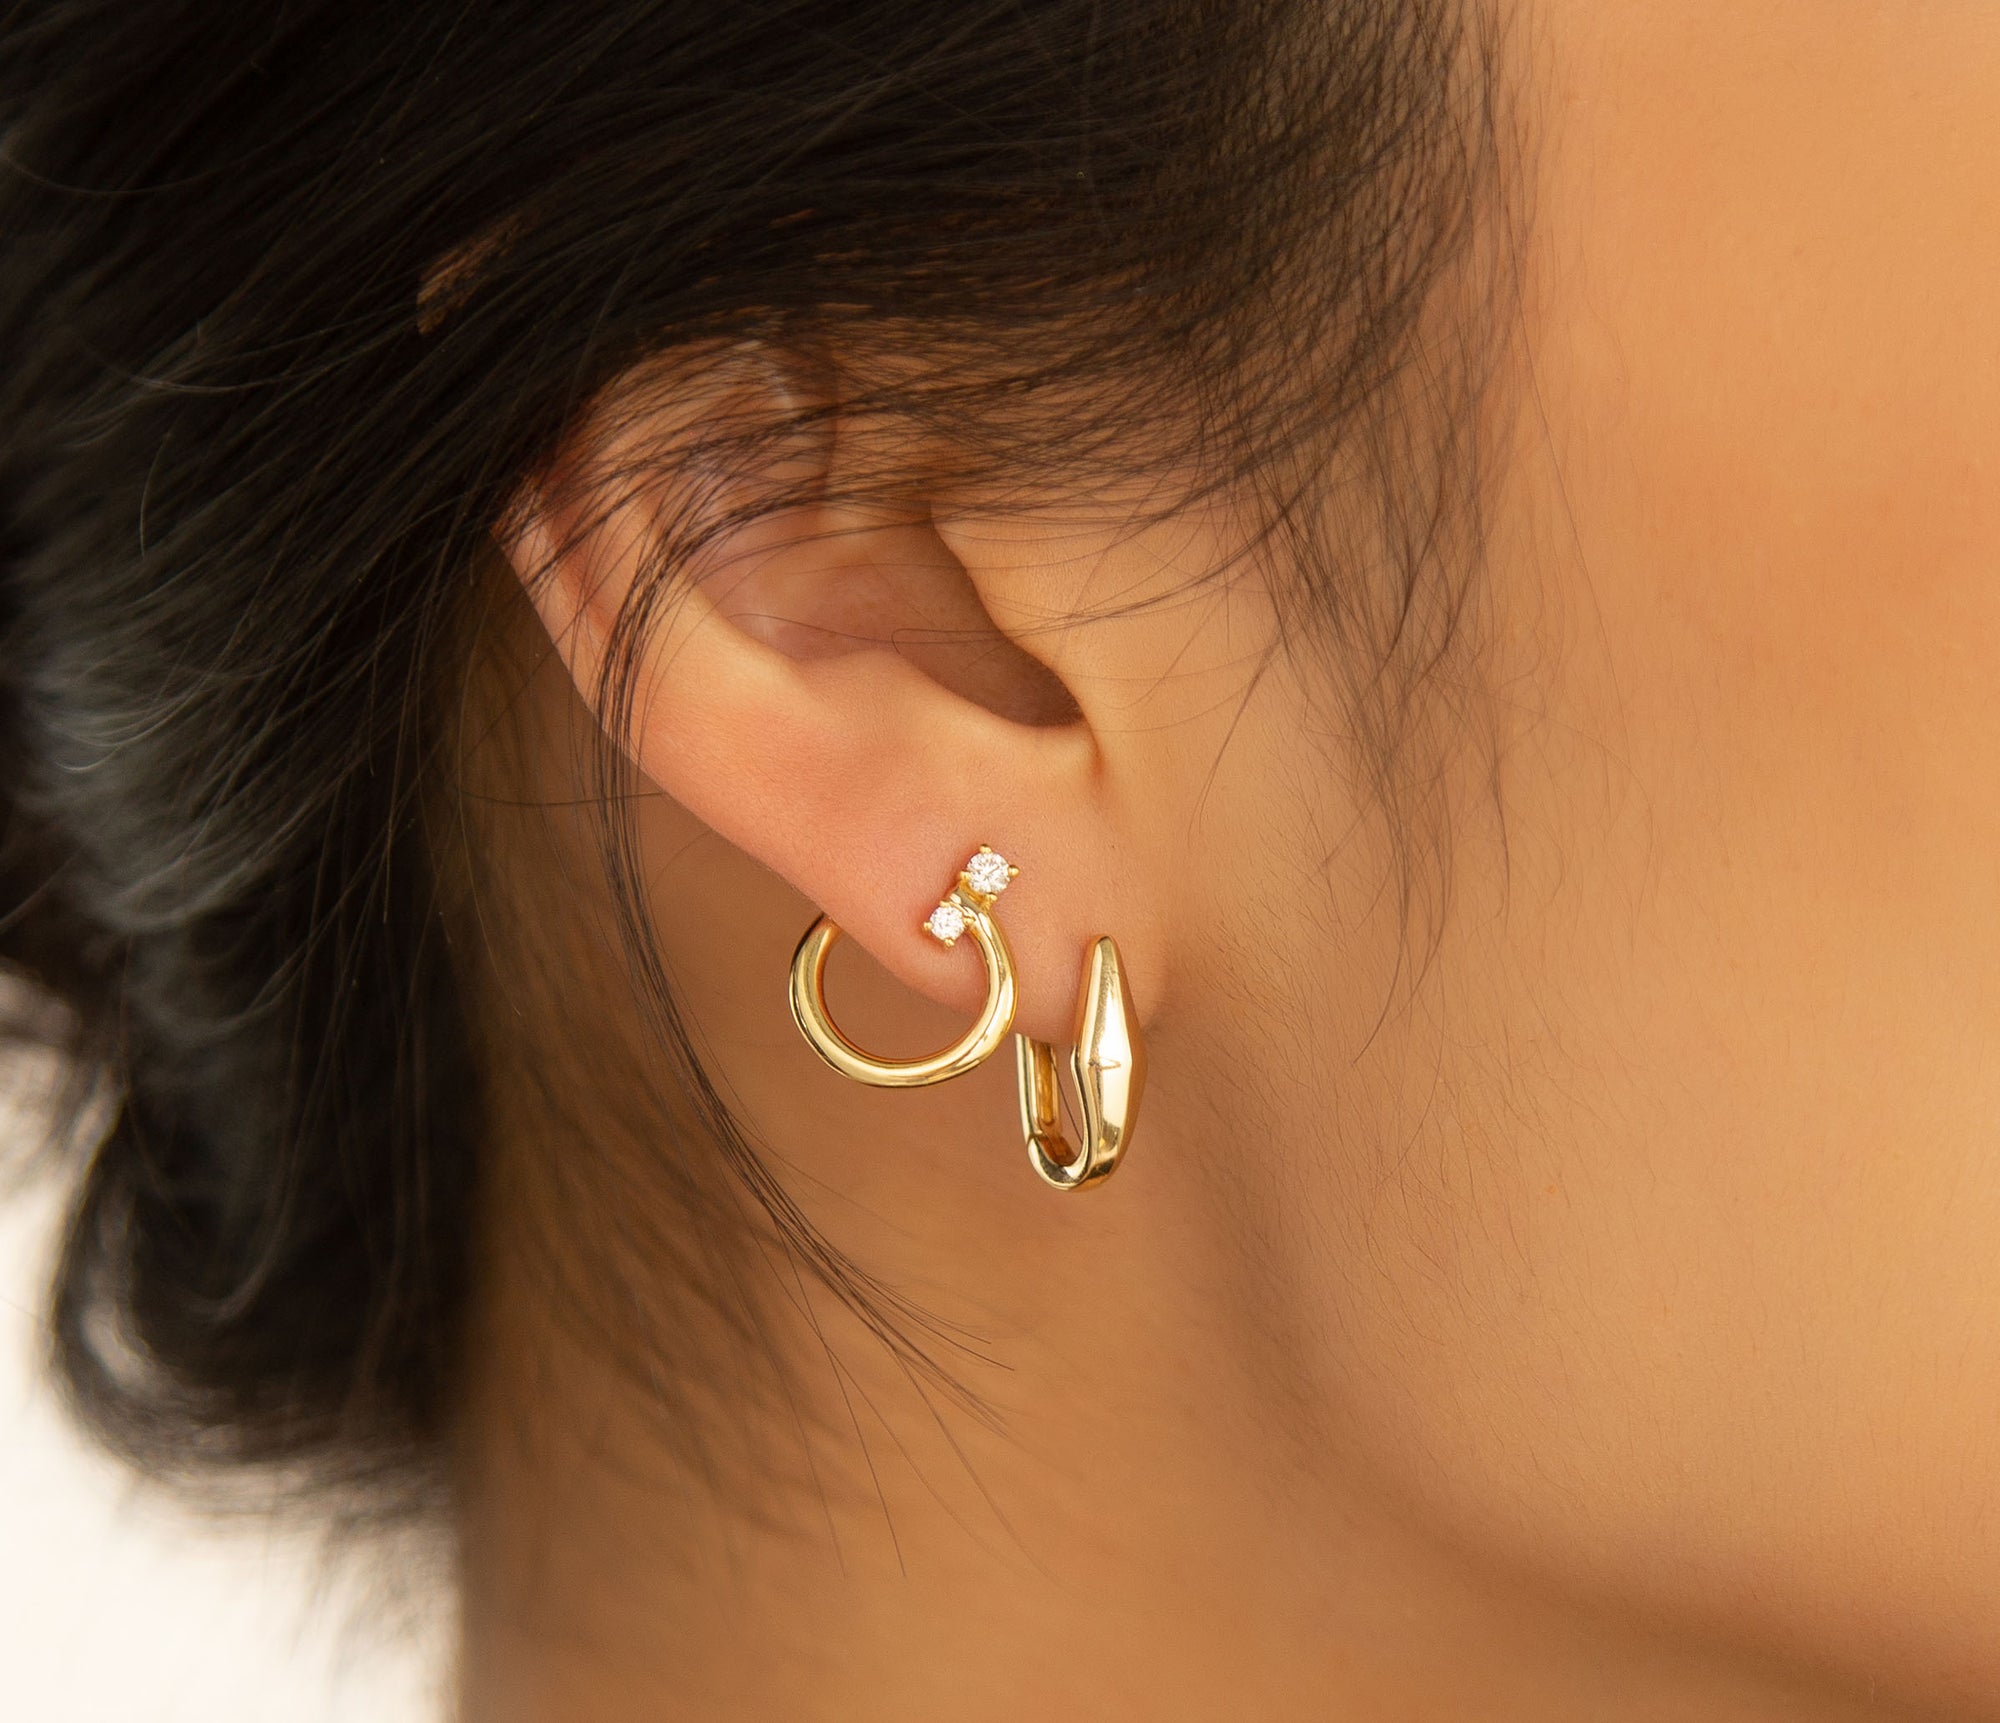 Shop all earrings